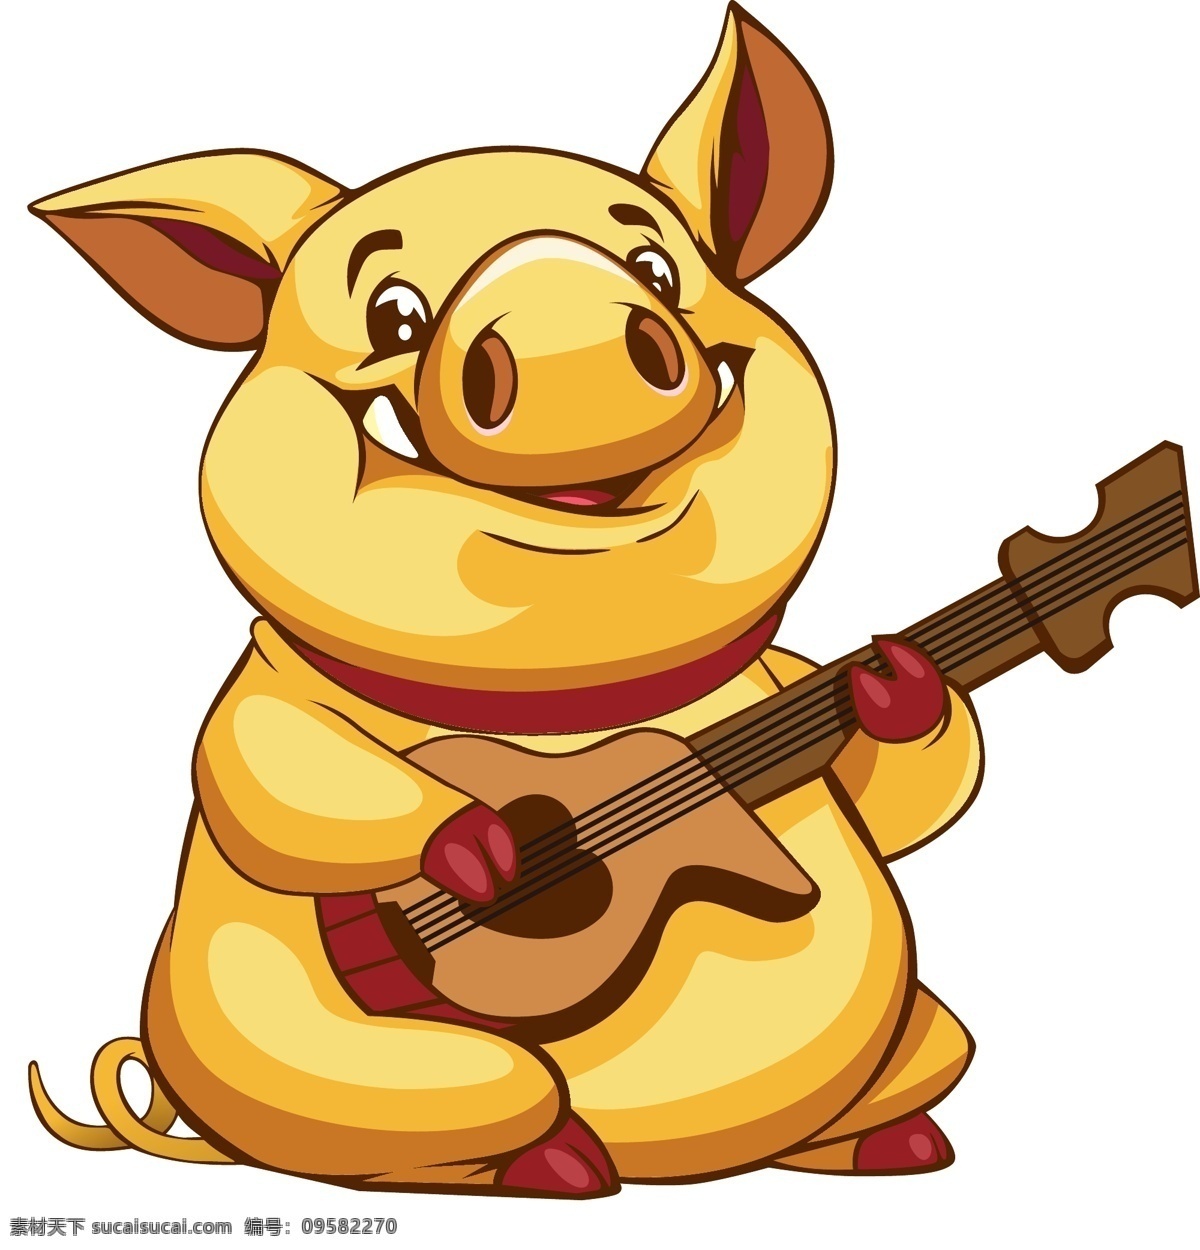 弹 吉他 金 猪 矢量图 弹吉他 2019年 猪年 金猪 金色 卡通金猪 卡通矢量 猪猪 手绘 手绘猪